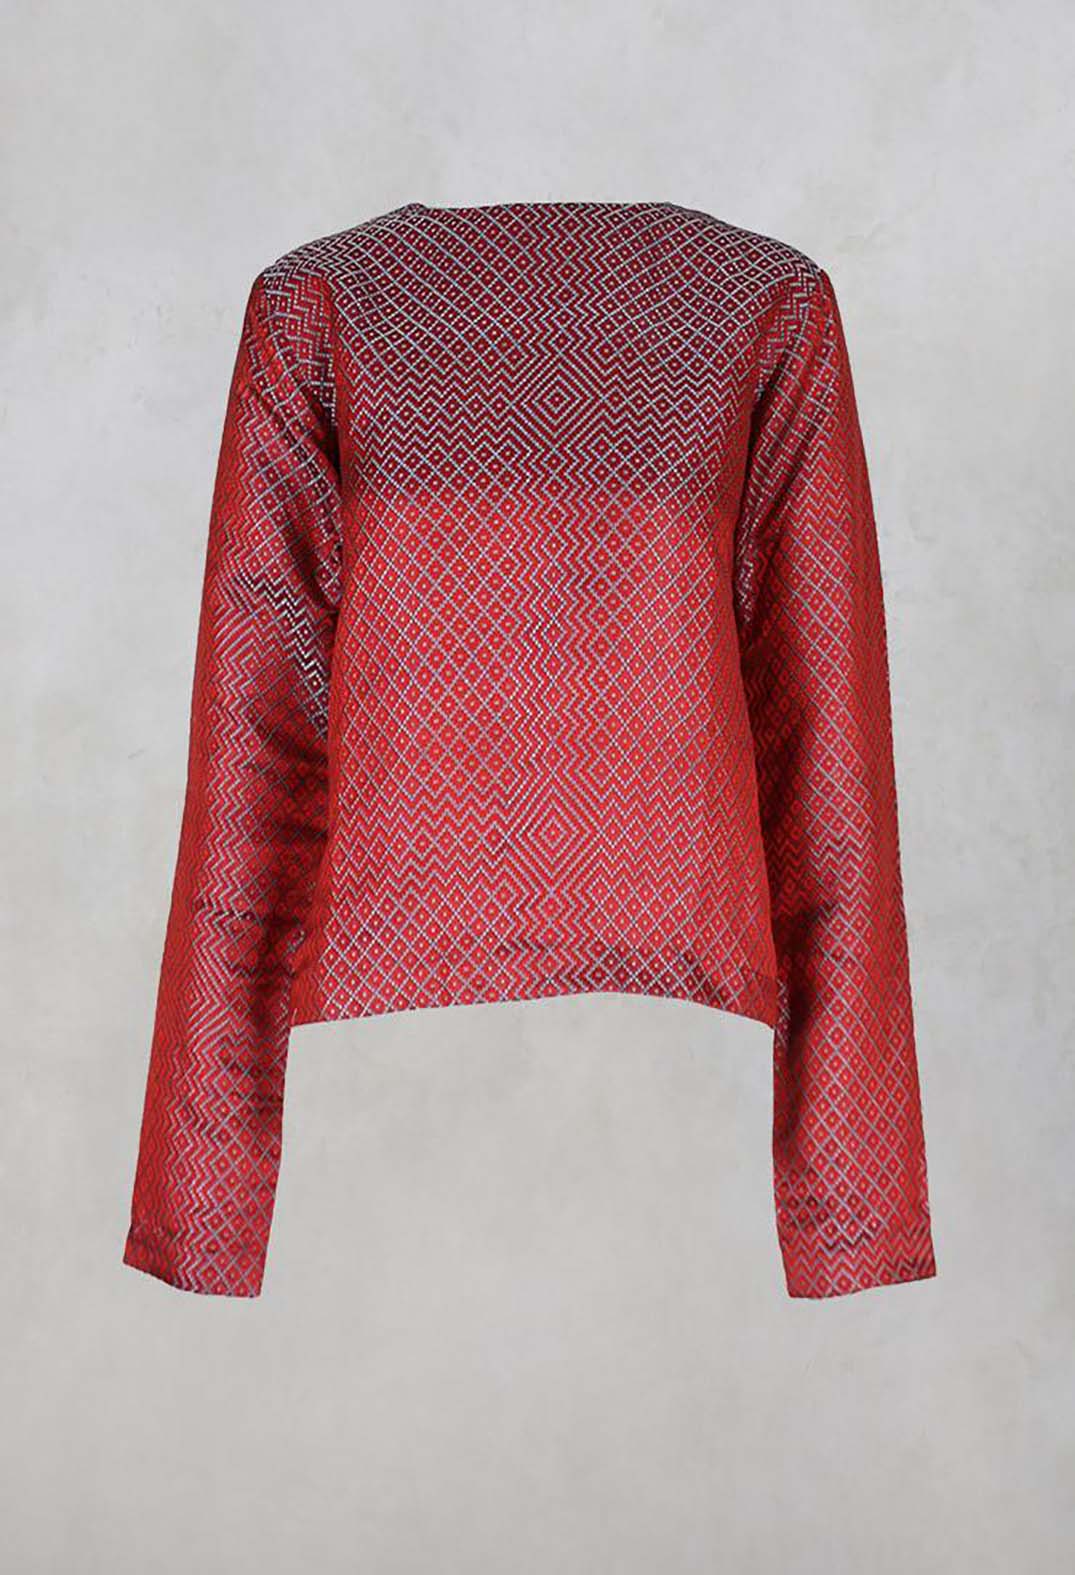 Brocade Silk Top in Metallic Red